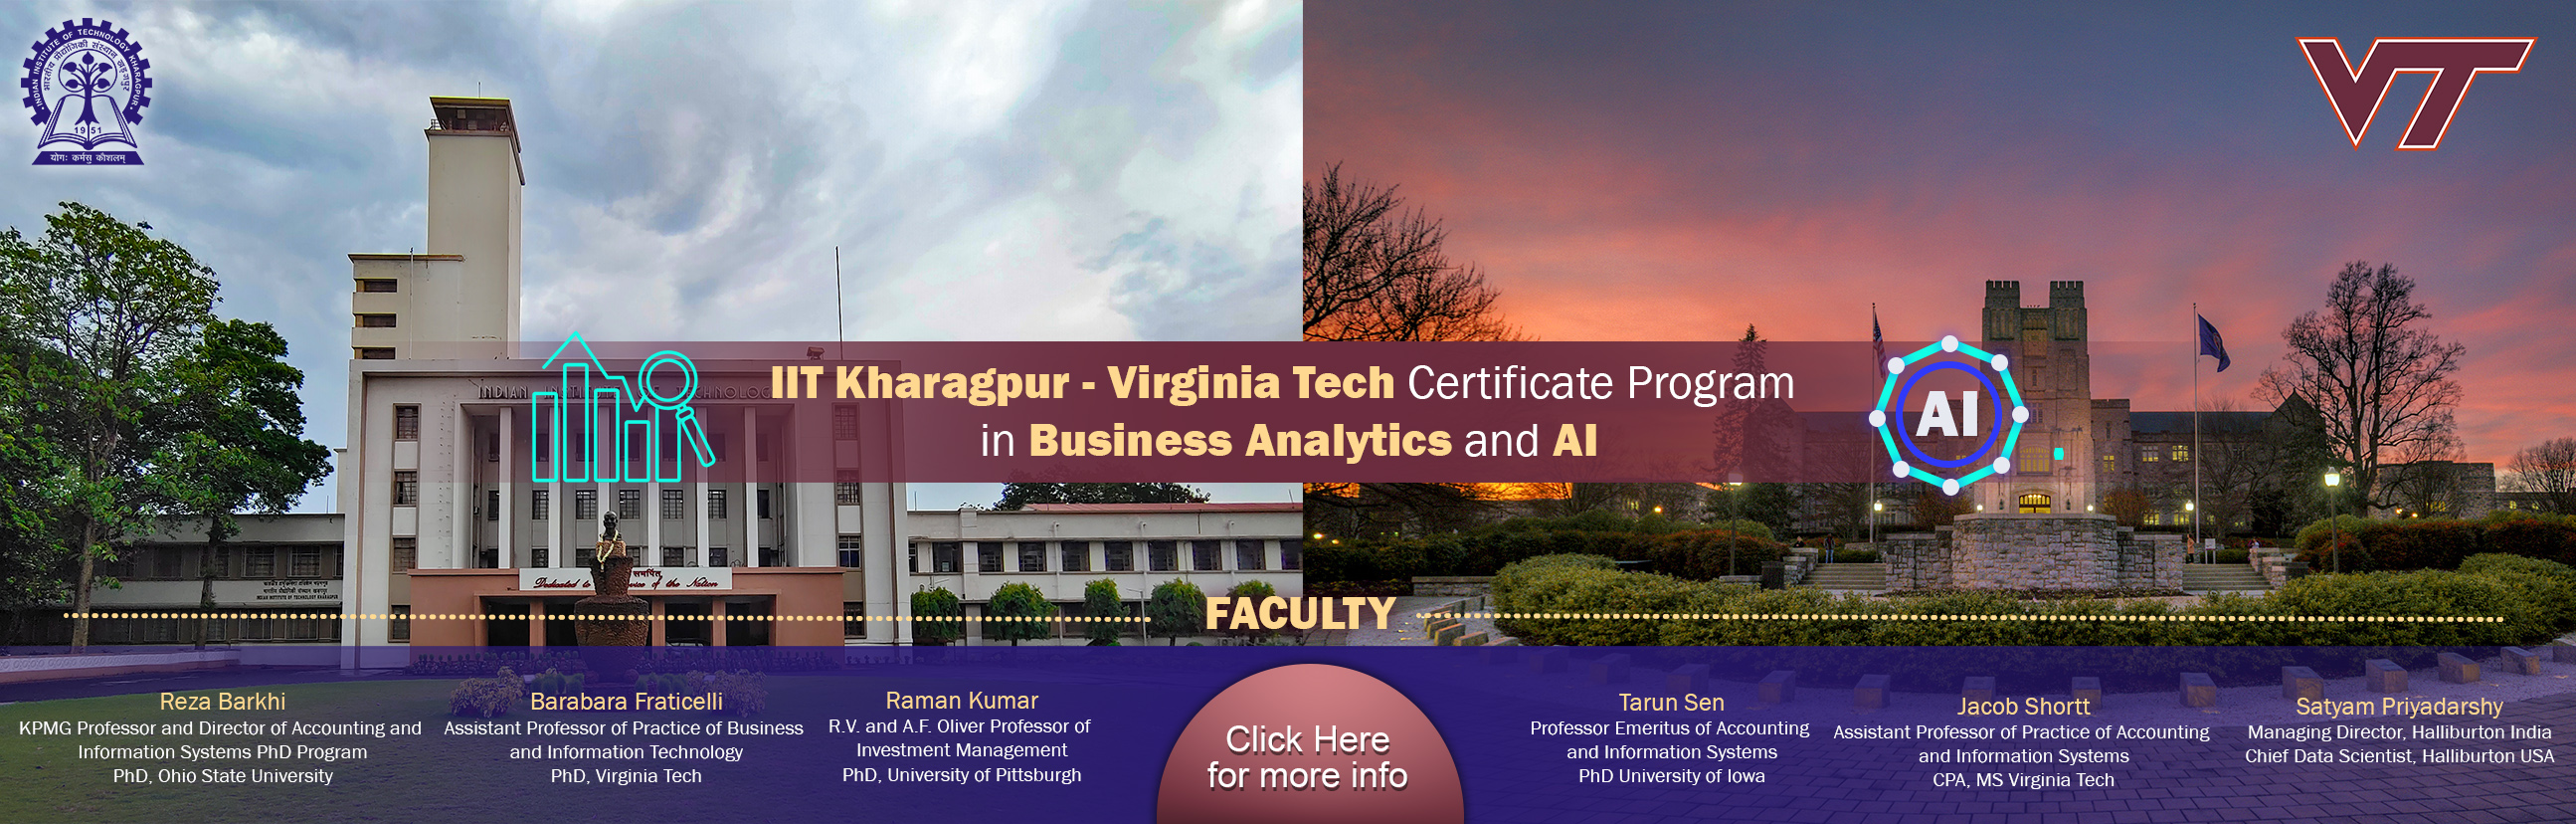 IIT KGP Virginia Tech Certificate Program